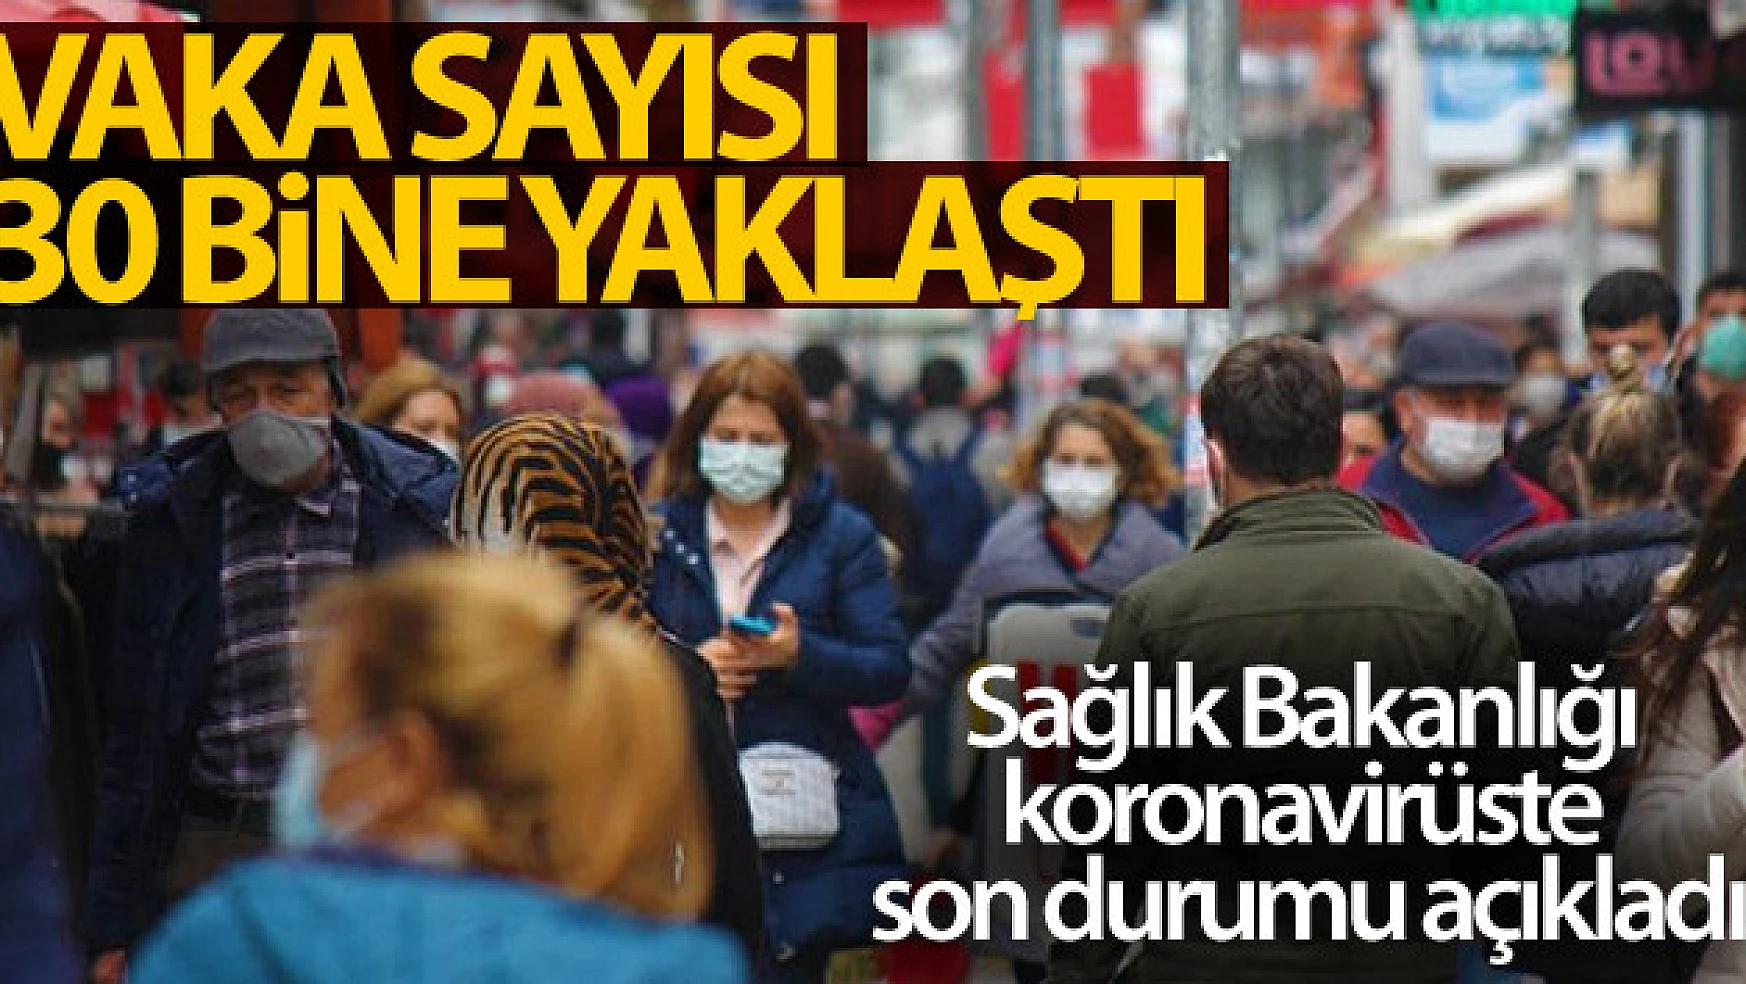 Türkiye'de son 24 saatte 29.762 koronavirüs vakası tespit edildi